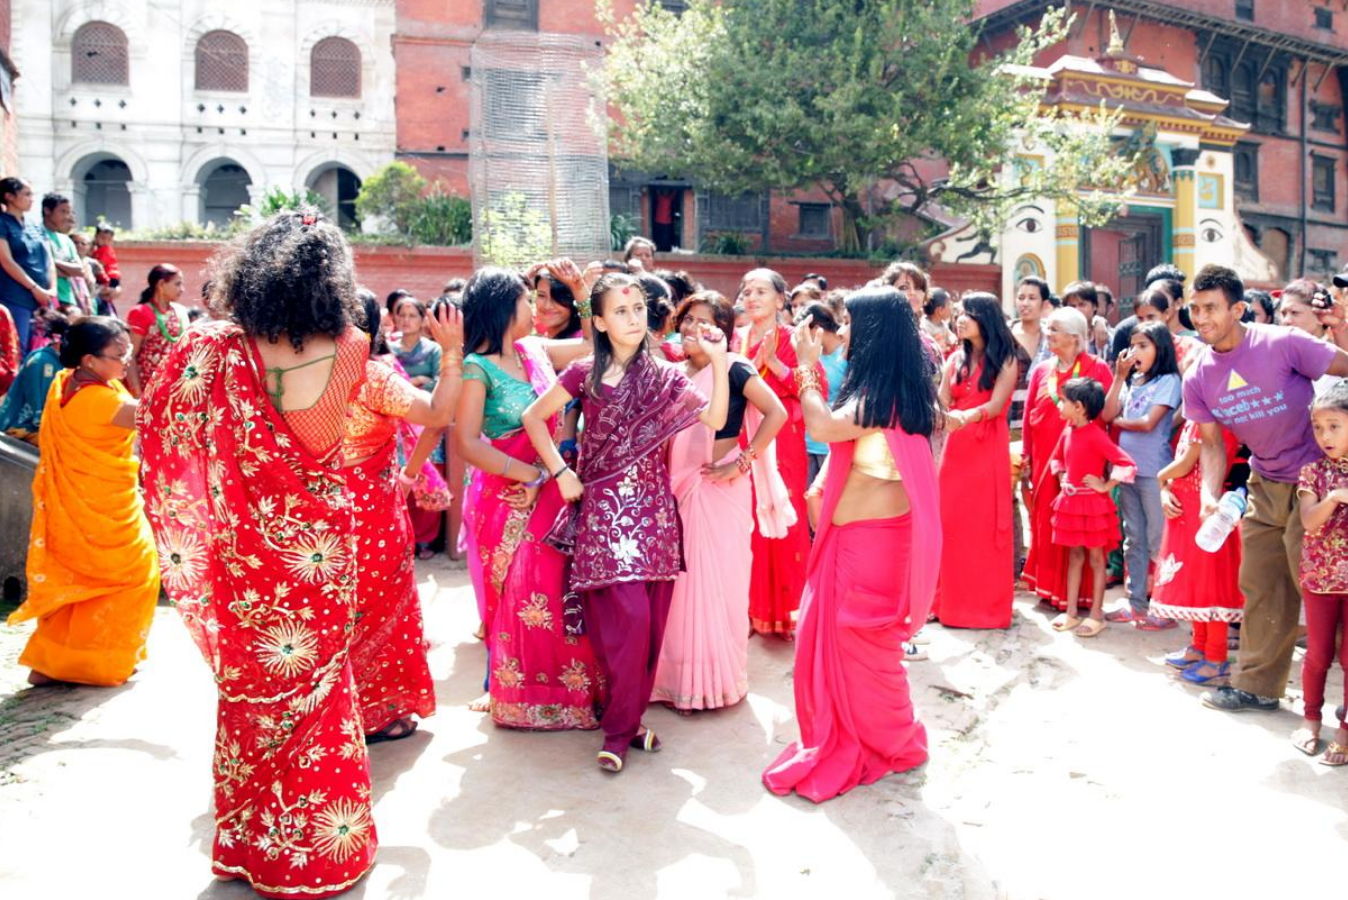 一妻多夫的尼泊尔兄弟几人同娶一个老婆妻子表示太过劳累